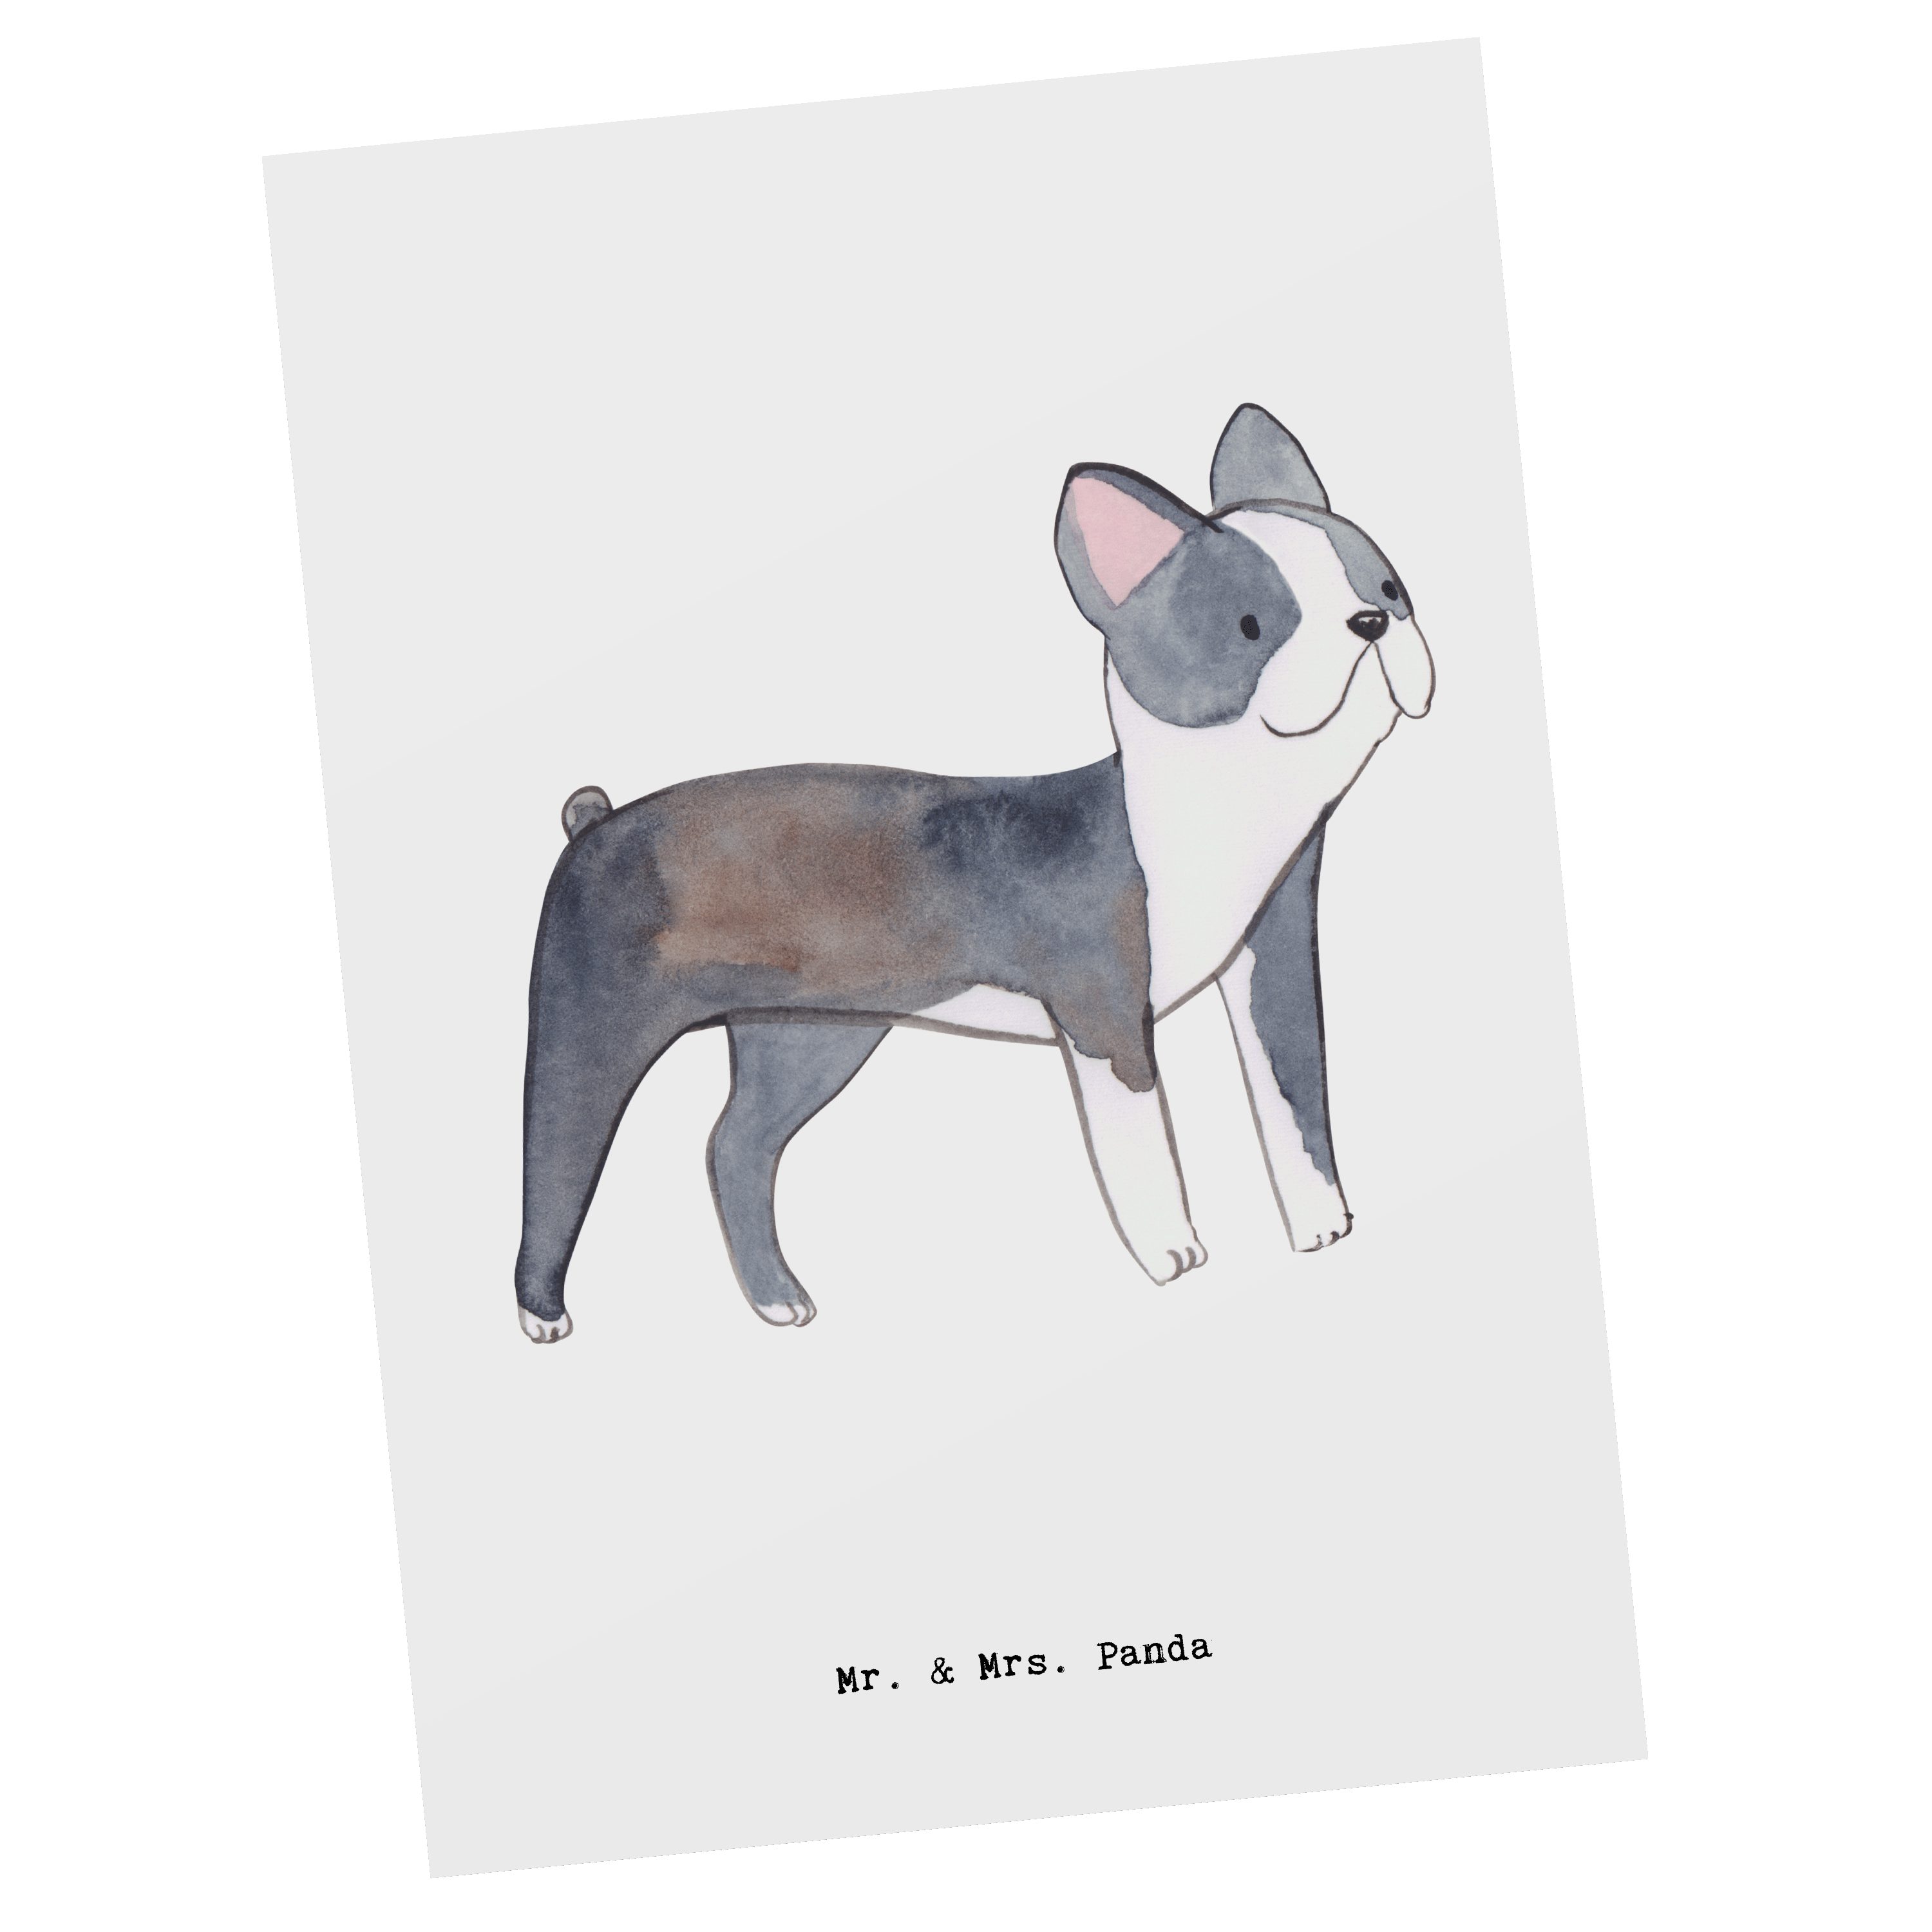 Mr. & Mrs. Panda - - Boston Geschenk, Terrier Postkarte Geschenkkarte, Tierfre Hund, Moment Weiß